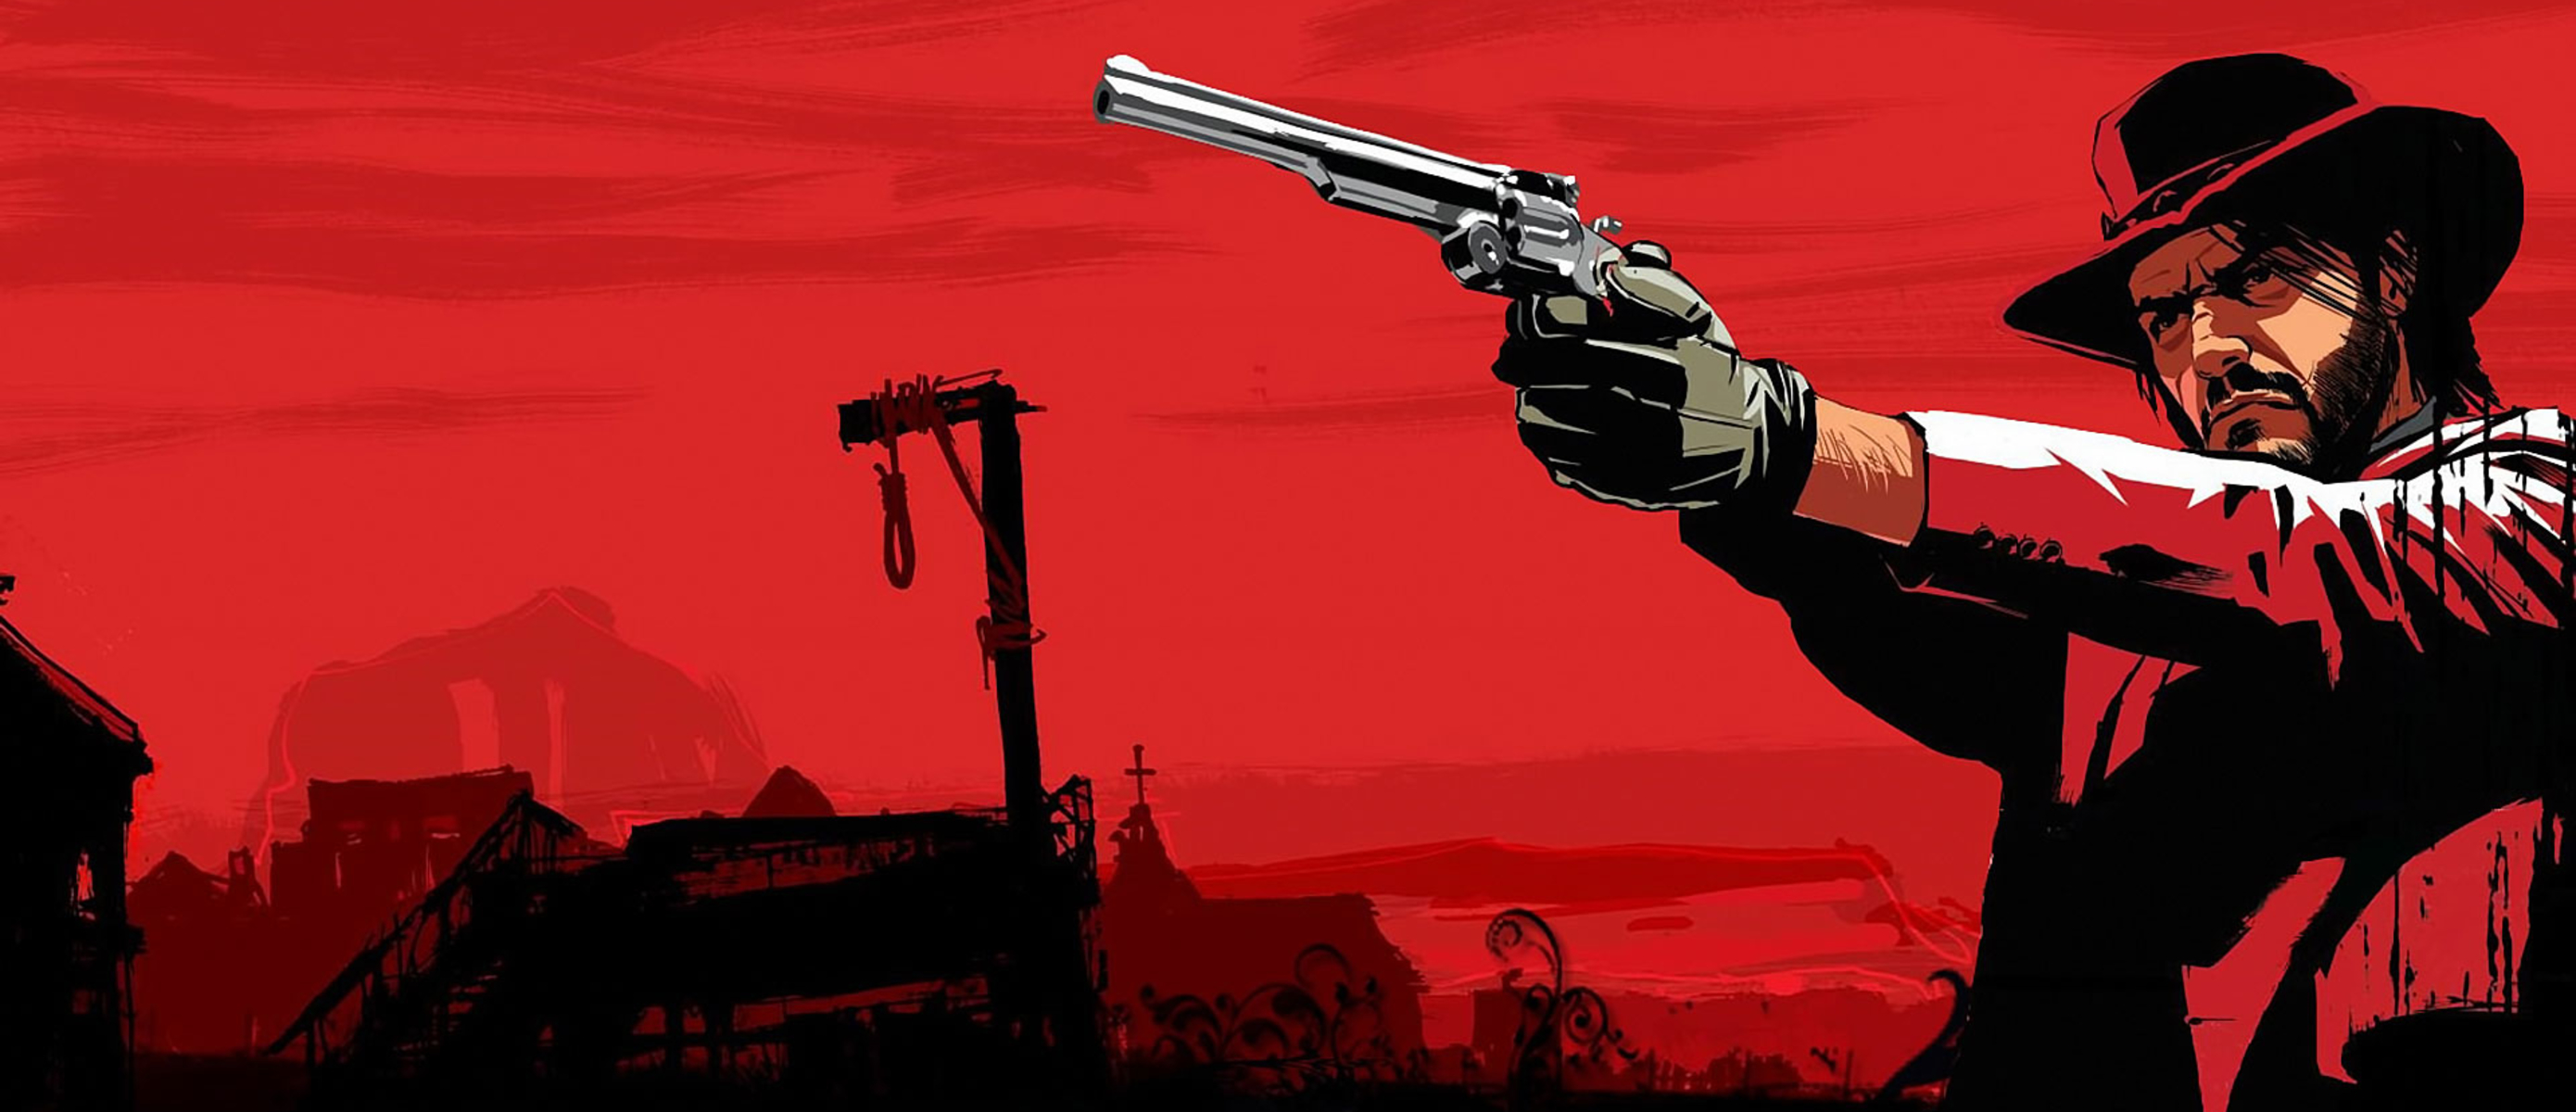 Rockstar games launcher red dead redemption. Red Dead Redemption 2. Red Dead Redemption Red Dead Redemption. Дикий Запад Red Dead Redemption 1. Дикий Запад ред дед редемпшен 2.